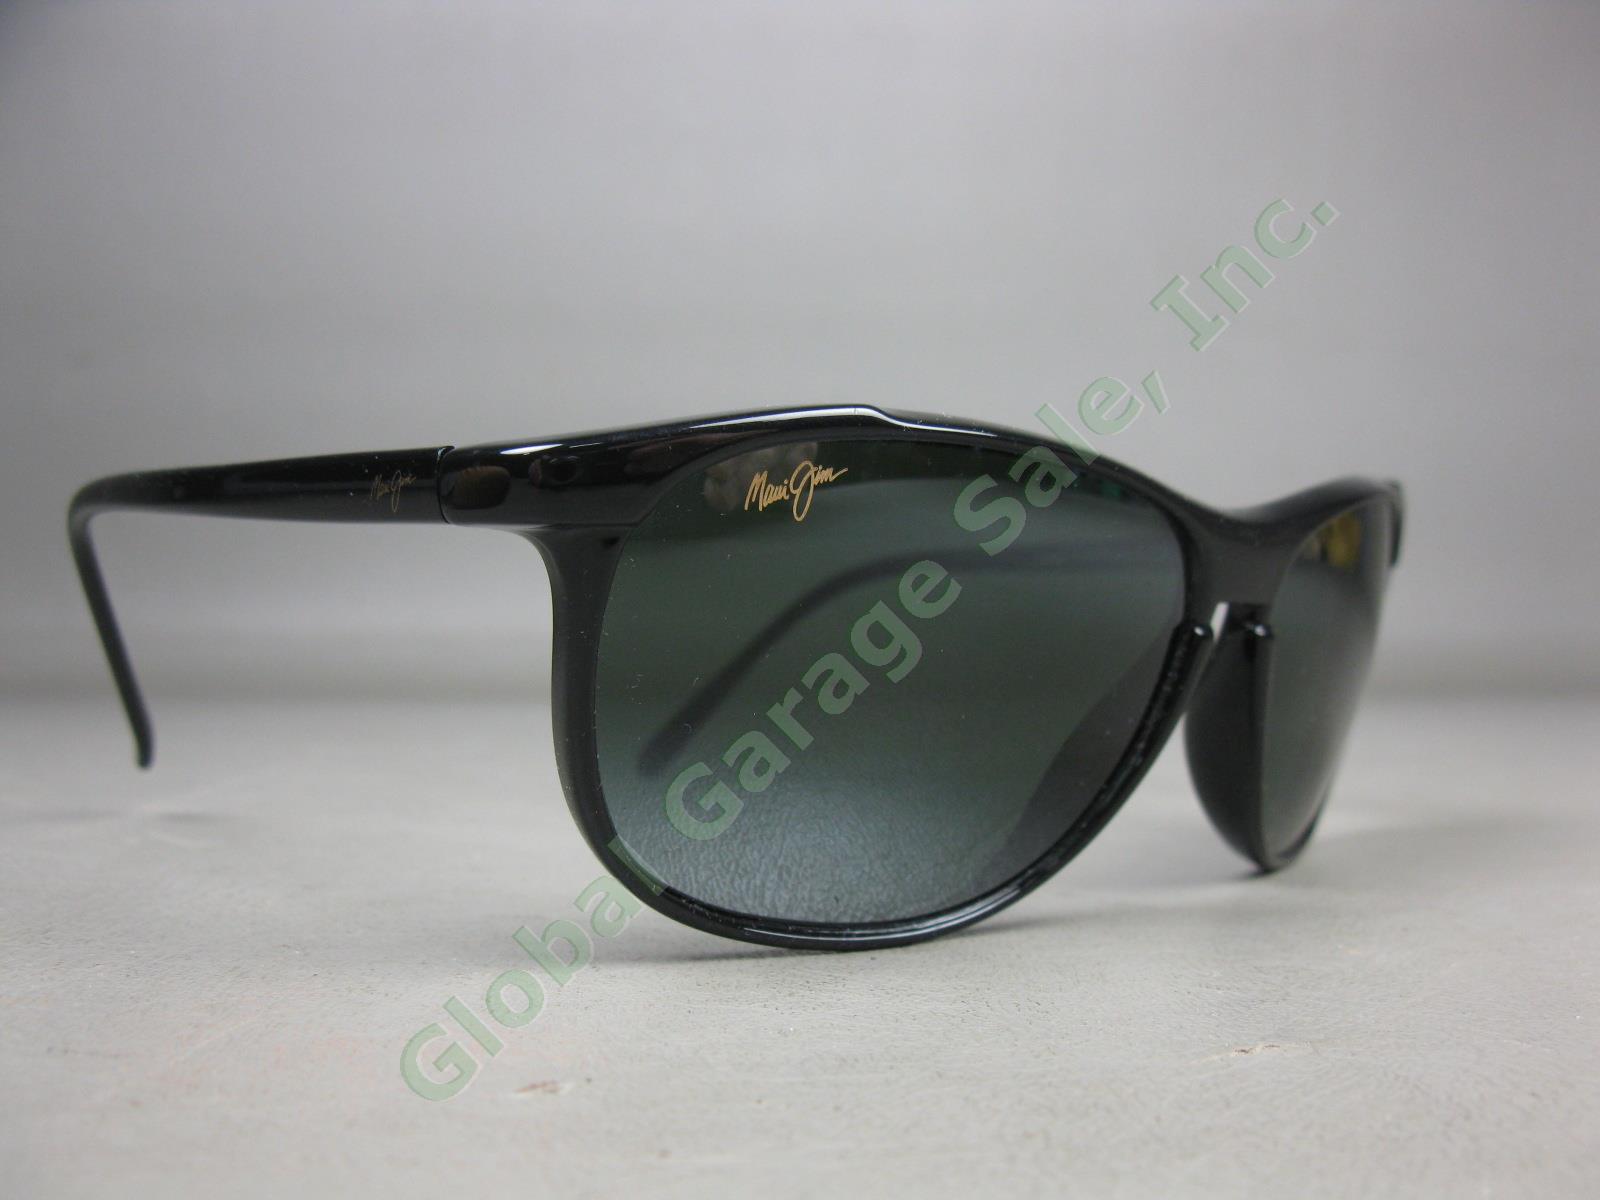 Maui Jim Voyager MJ178-02II 60/15-135 Polarized Lens Black Frame Sunglasses Lot 1